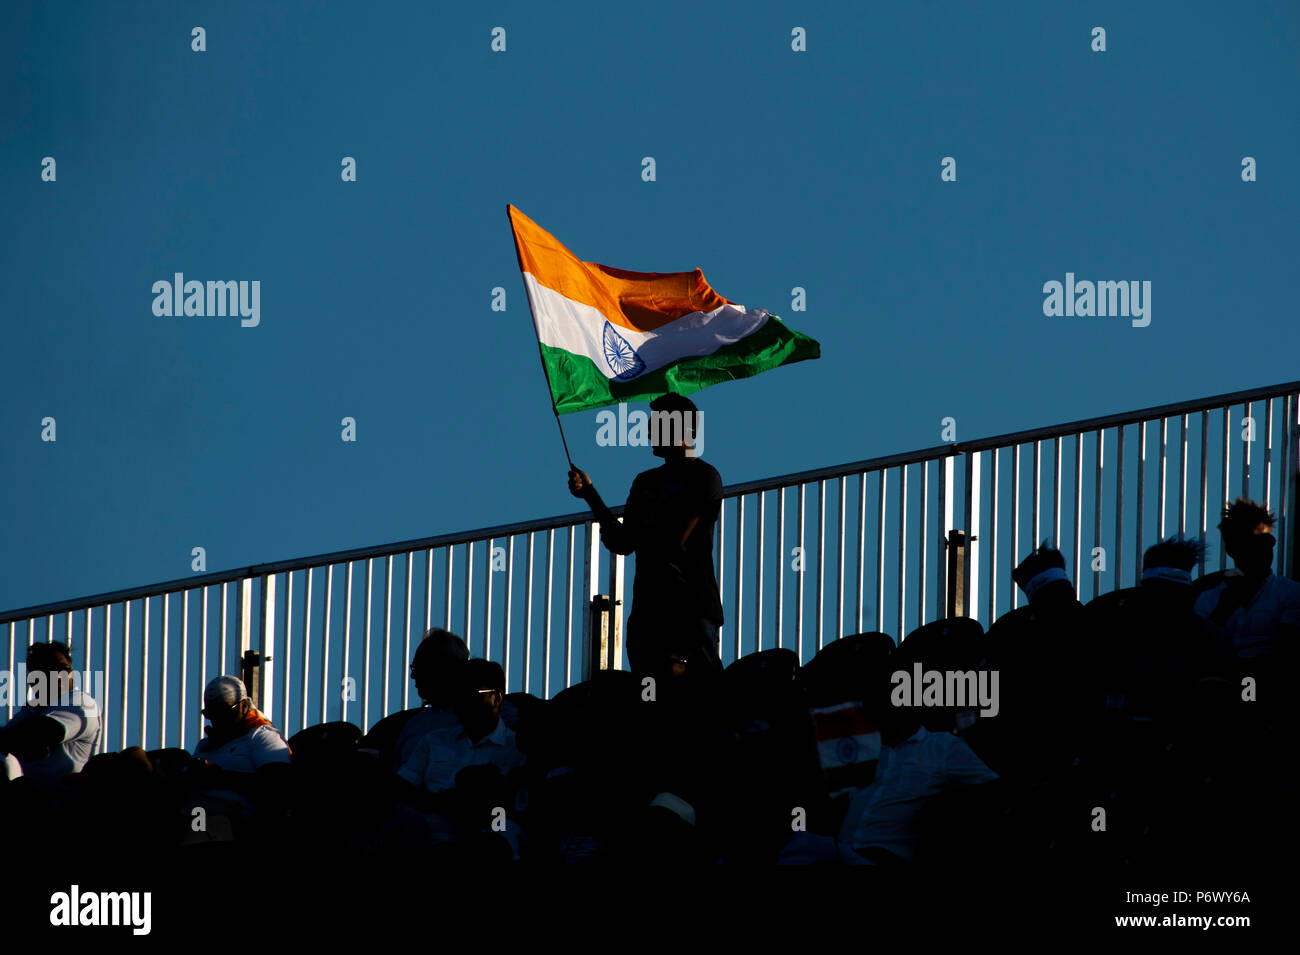 Manchester, Regno Unito. Il 3° luglio 2018. Un ventilatore indiano in crows durante il primo International T20 match tra Inghilterra e India a Old Trafford, Manchester, Inghilterra il 3 luglio 2018. Foto di Brandon Griffiths. Credito: Brandon Griffiths/Alamy Live News Foto Stock